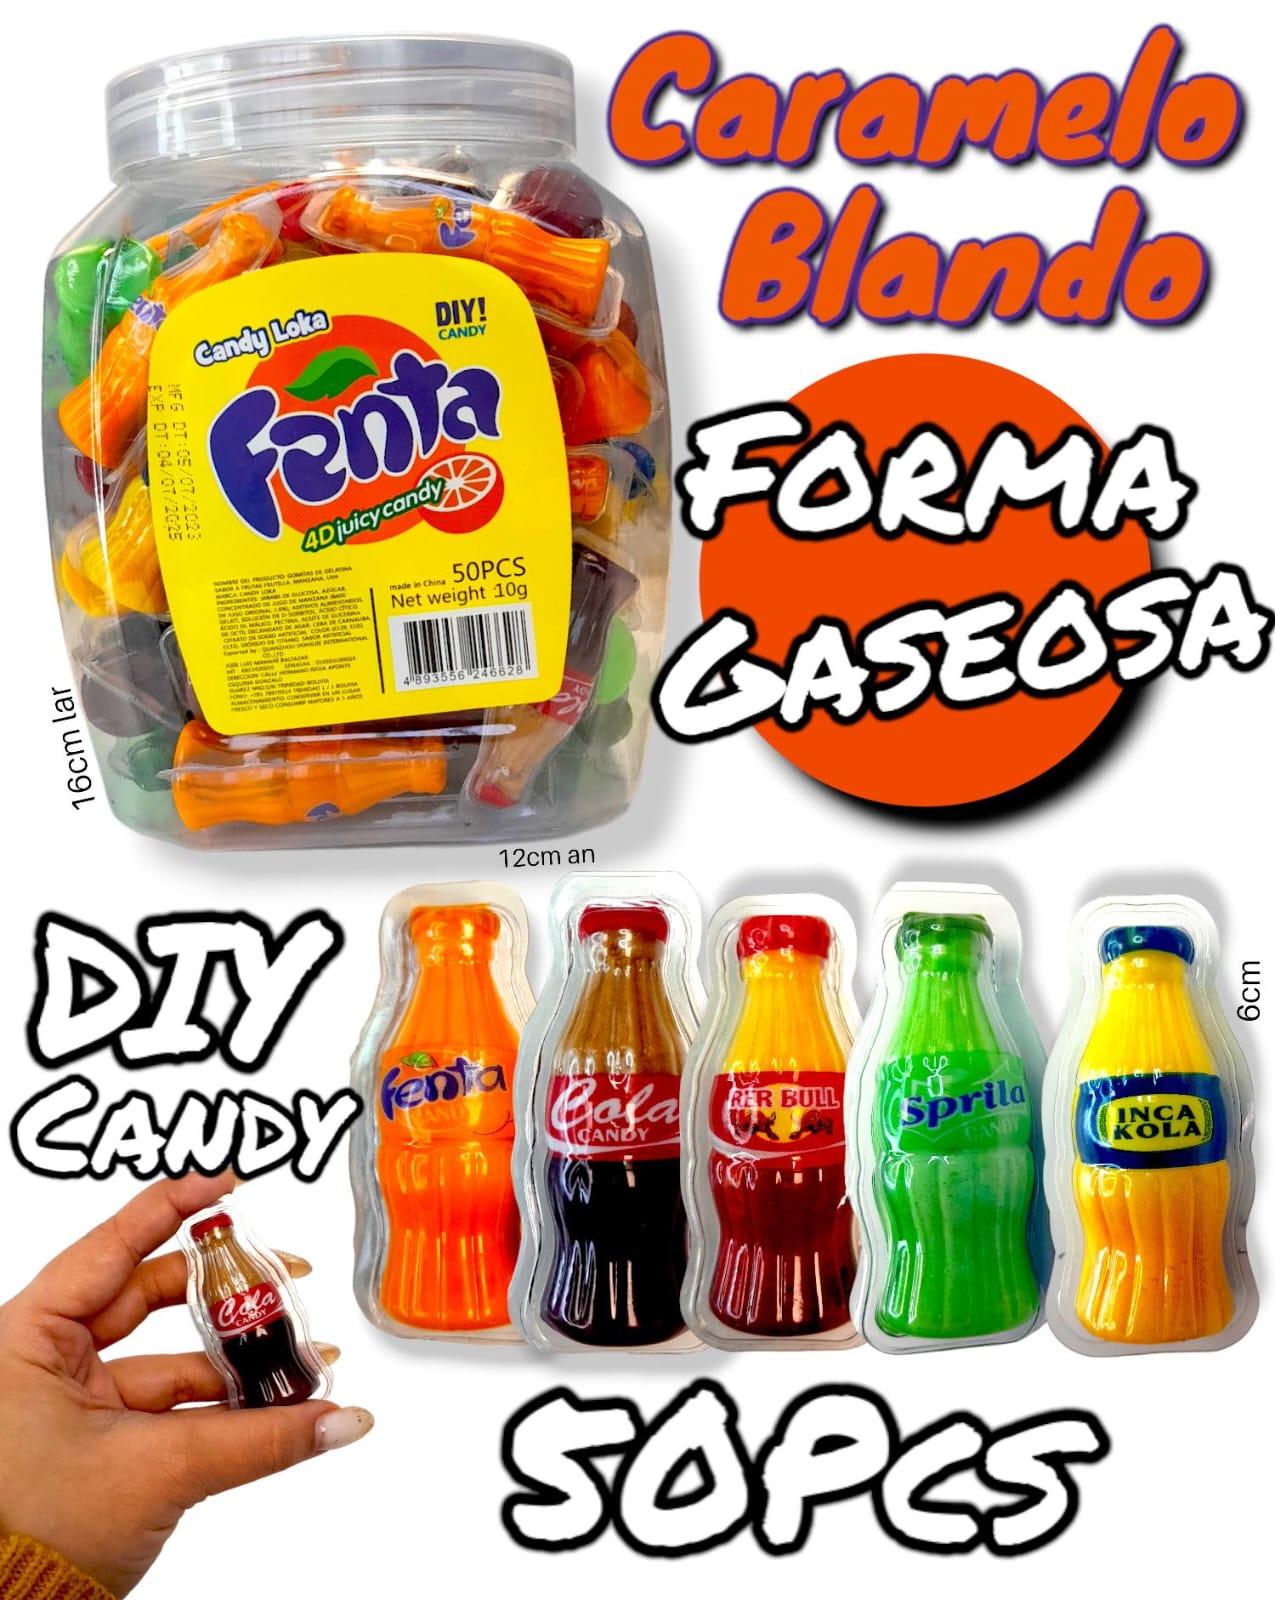 Caramelo Blando Forma Gaseosa DIY Candy 